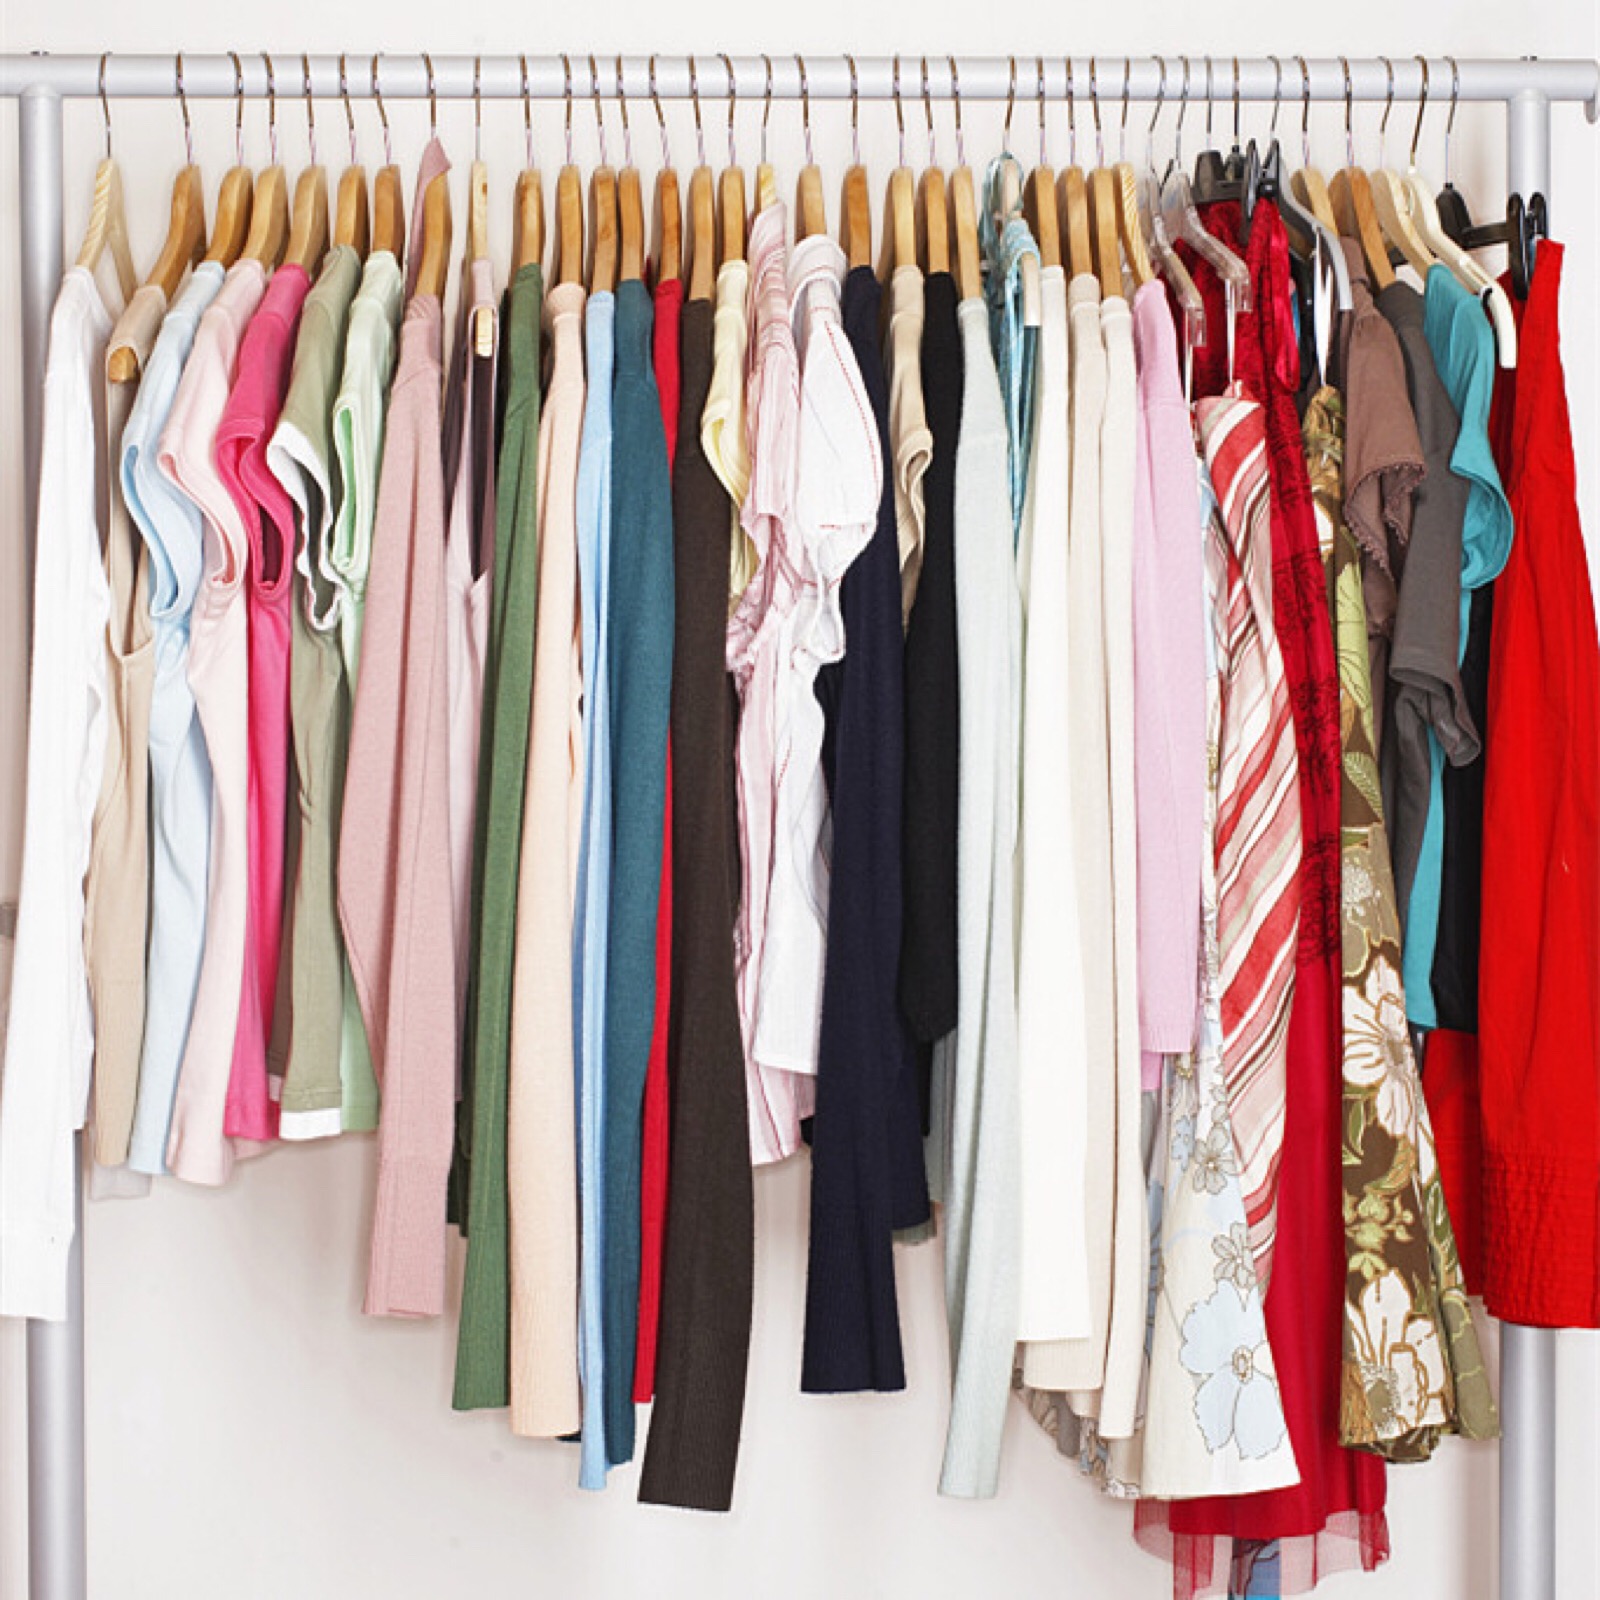 女人的衣柜里再多的衣服也不够穿,是少的原因吗?不是,是不知道穿哪件?